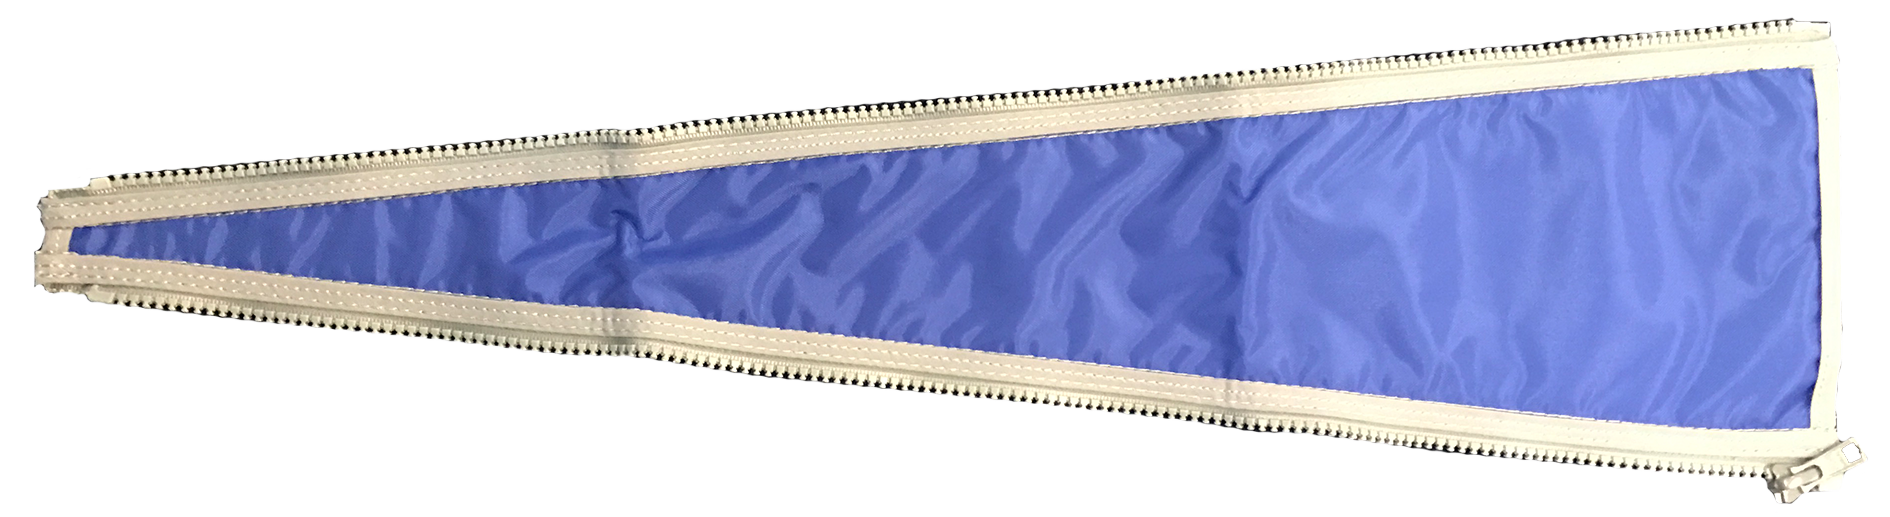 Långsmalt triangulärt blått tygstycke med dragkedjor längs de långa sidorna